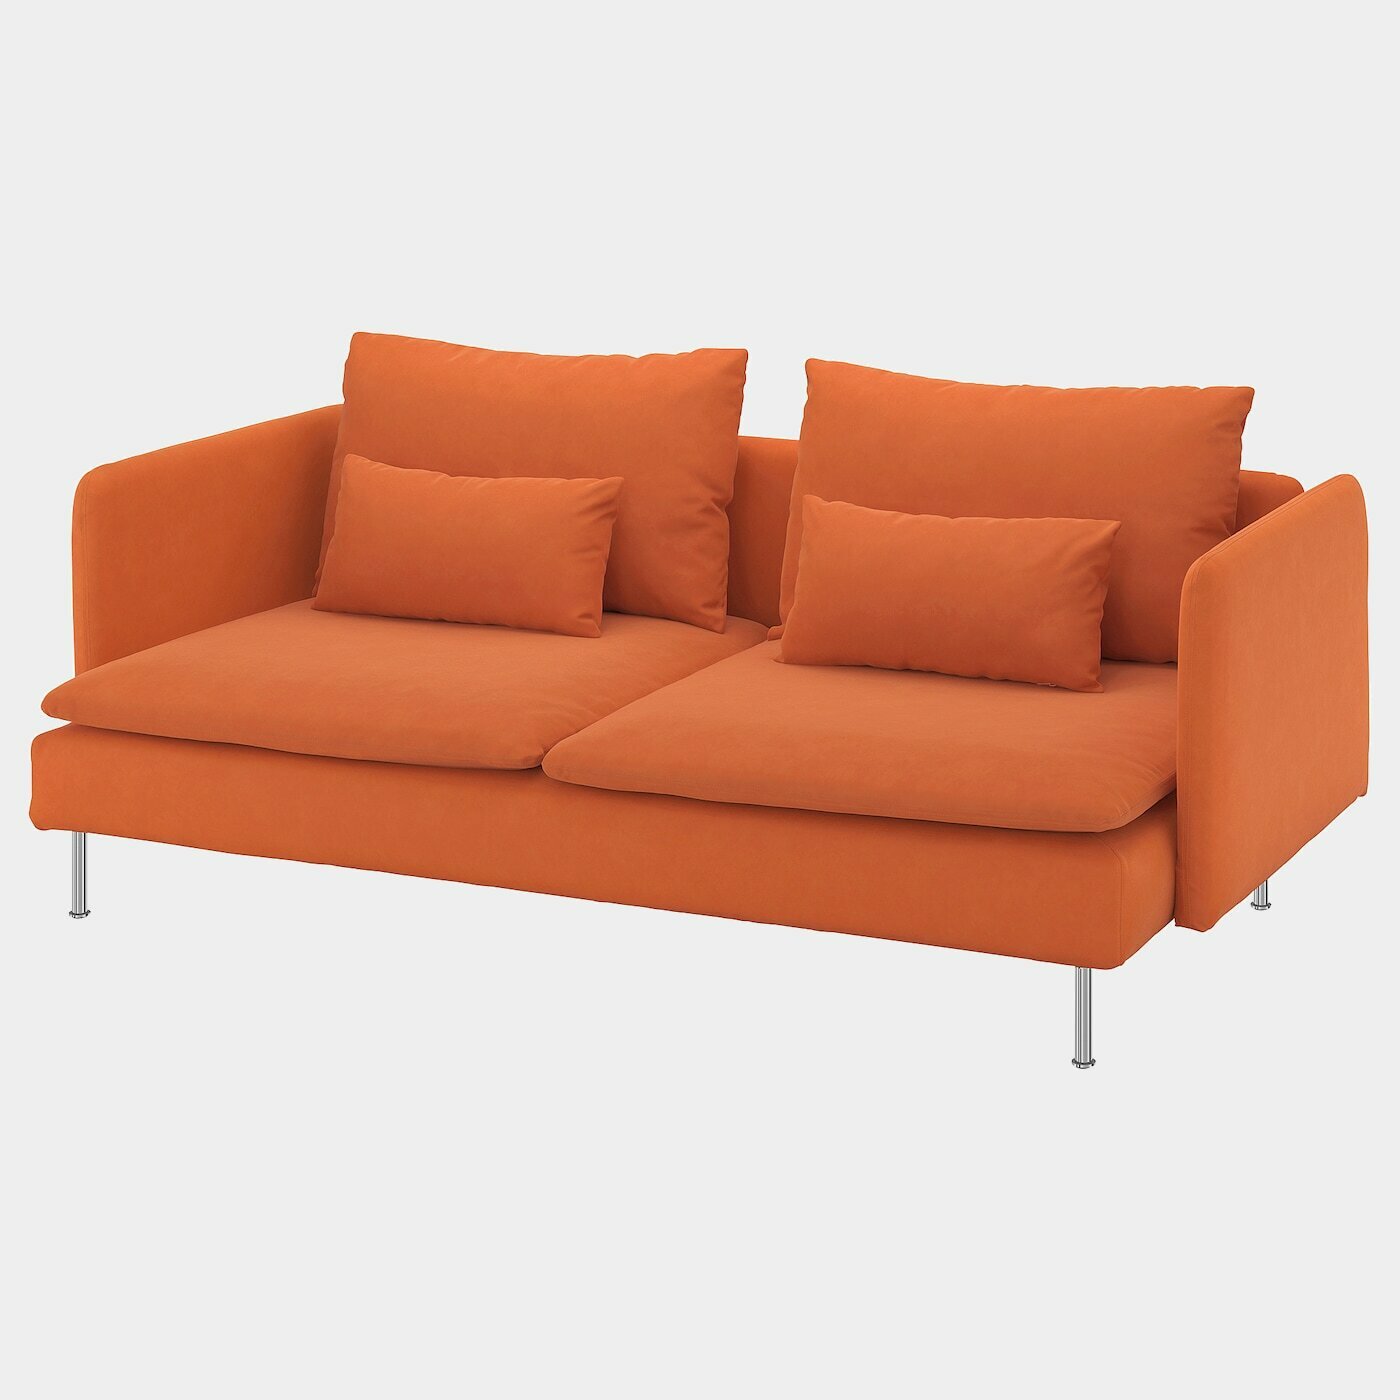 SÖDERHAMN 3er-Sofa  - Sofas, Textil - Möbel Ideen für dein Zuhause von Home Trends. Möbel Trends von Social Media Influencer für dein Skandi Zuhause.